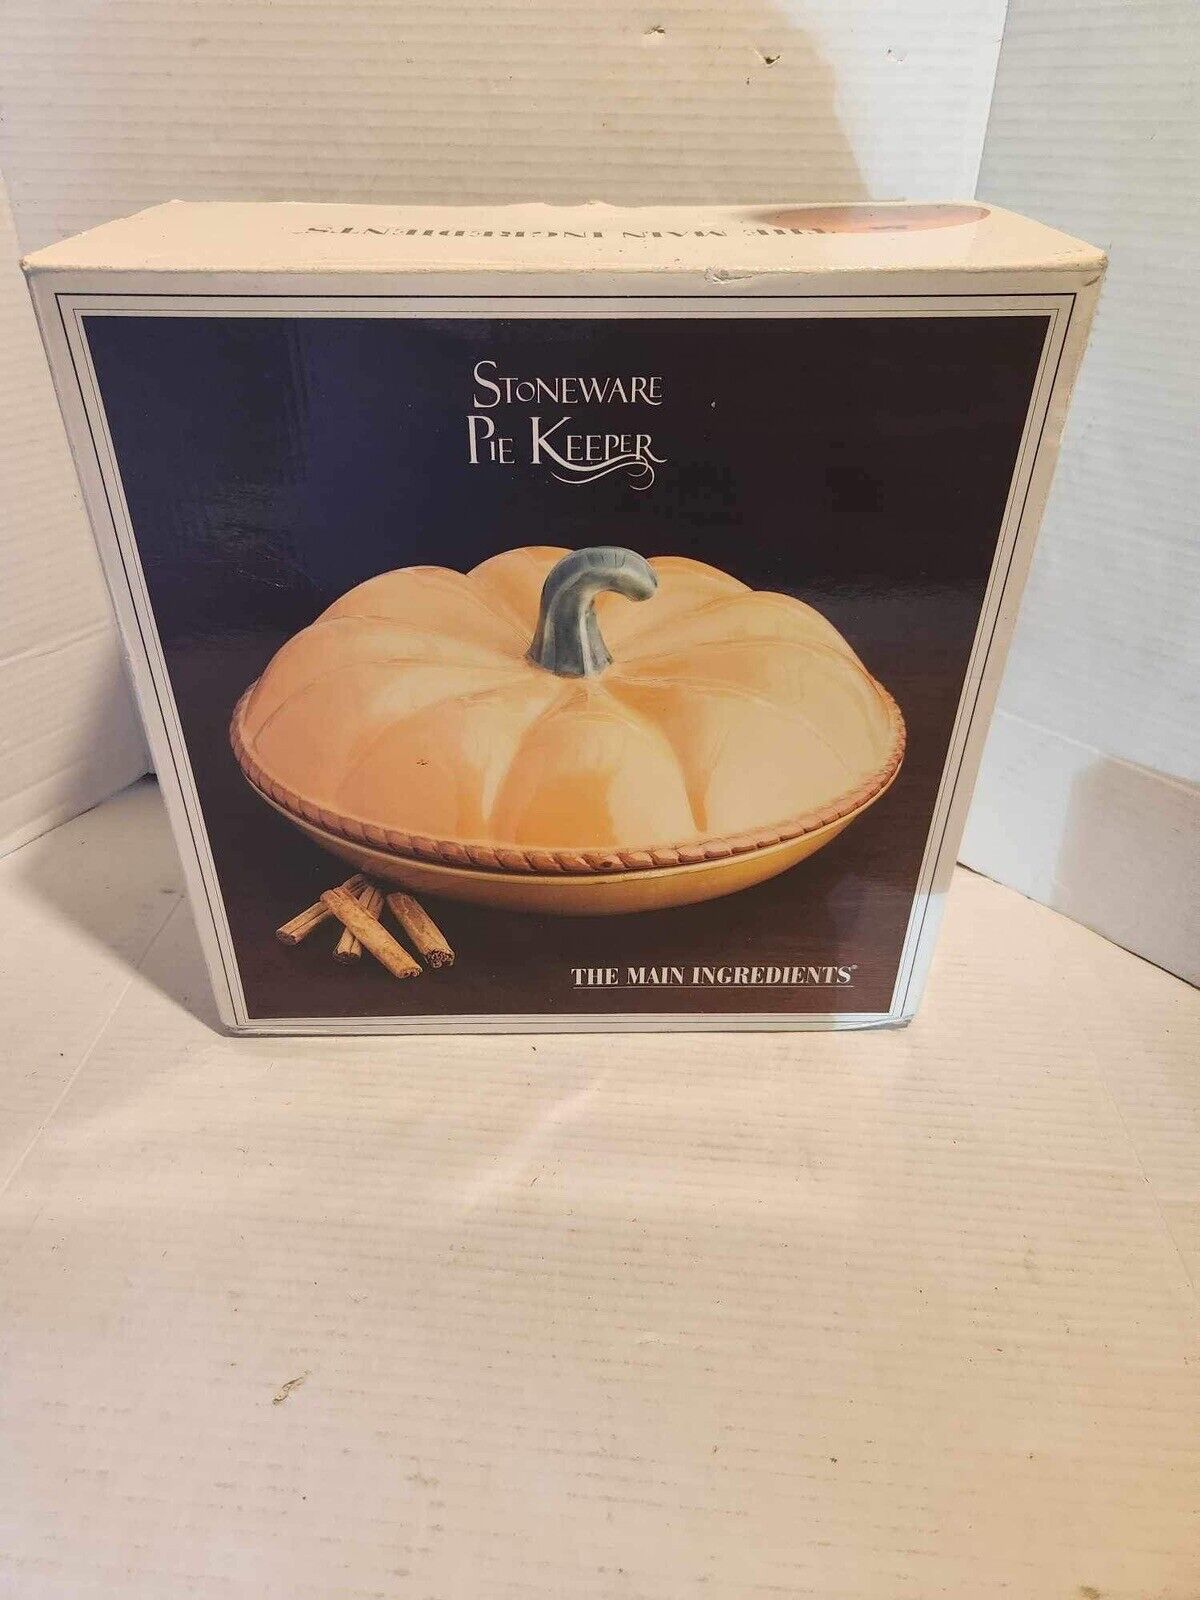 The Main Ingredient Orange Pumpkin Pie Holder Flawless Condition